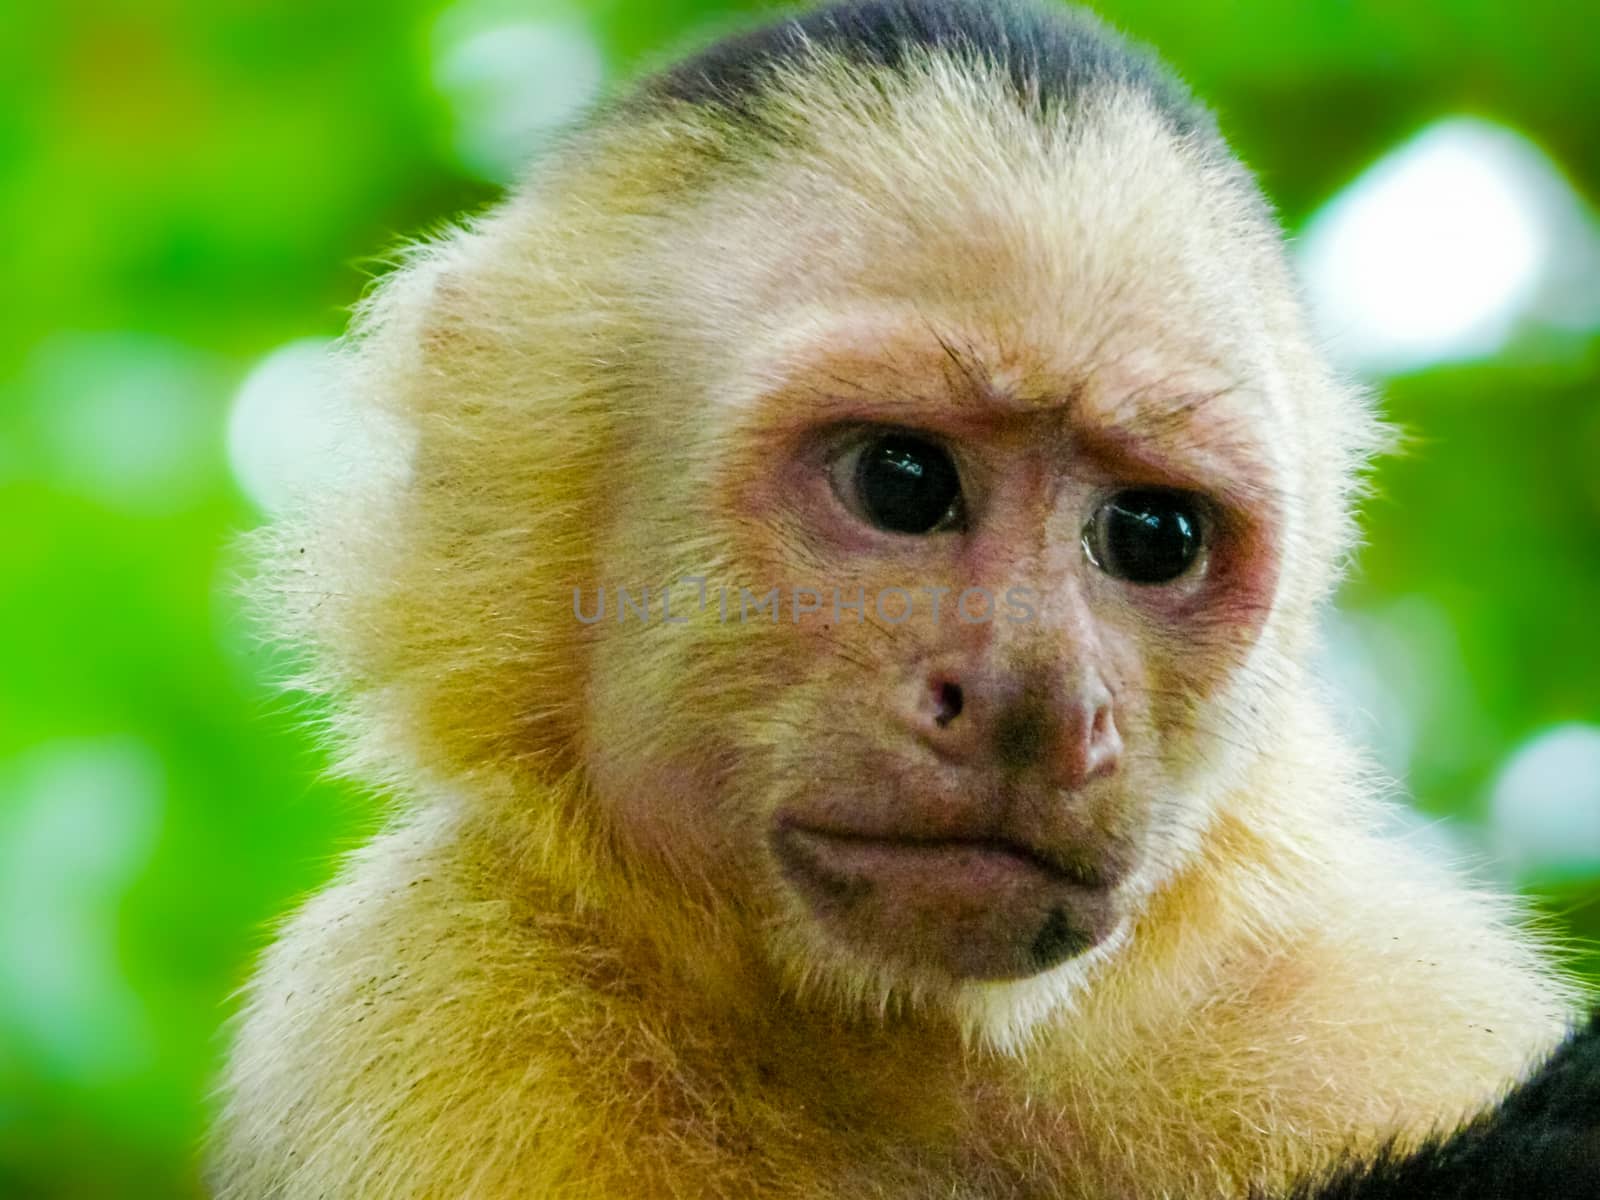 White-faced capuchin monkey, Manuel Antonio National Park by nicousnake